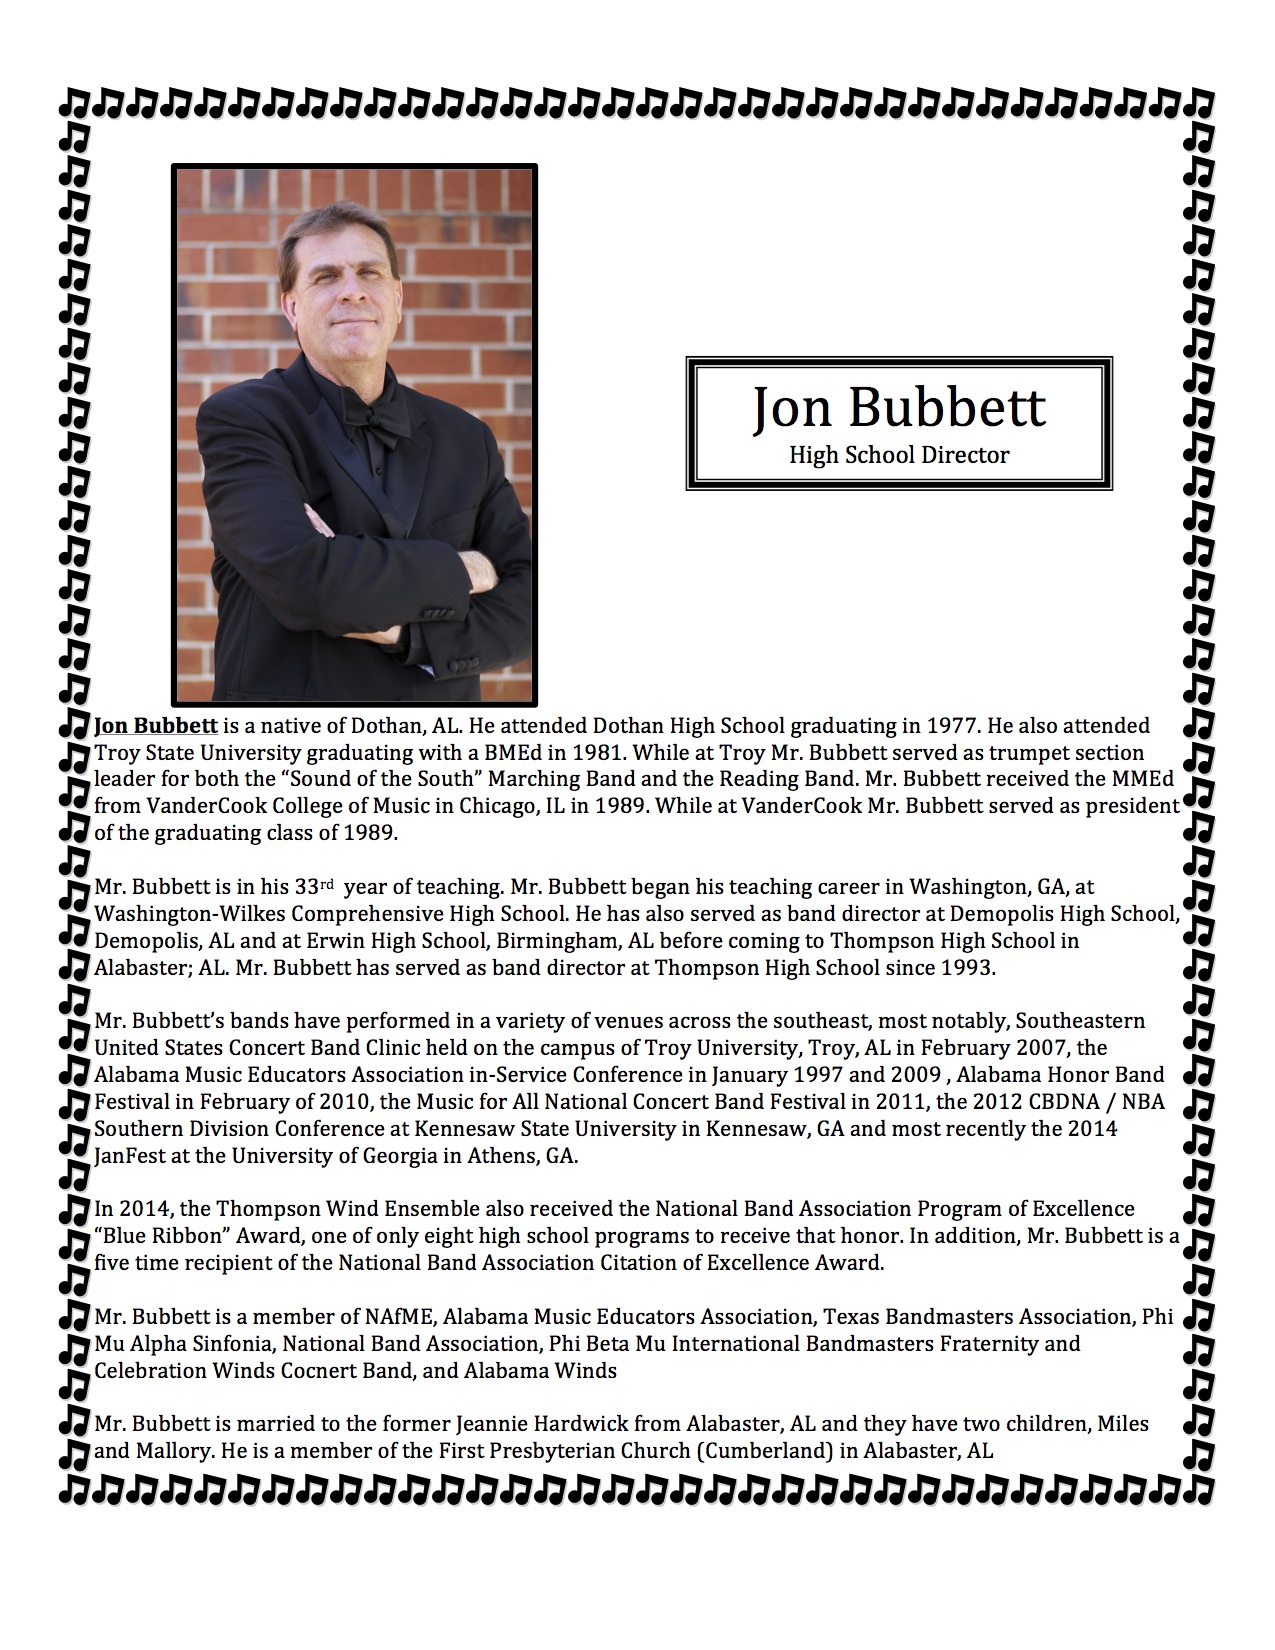 Jon Bubbett